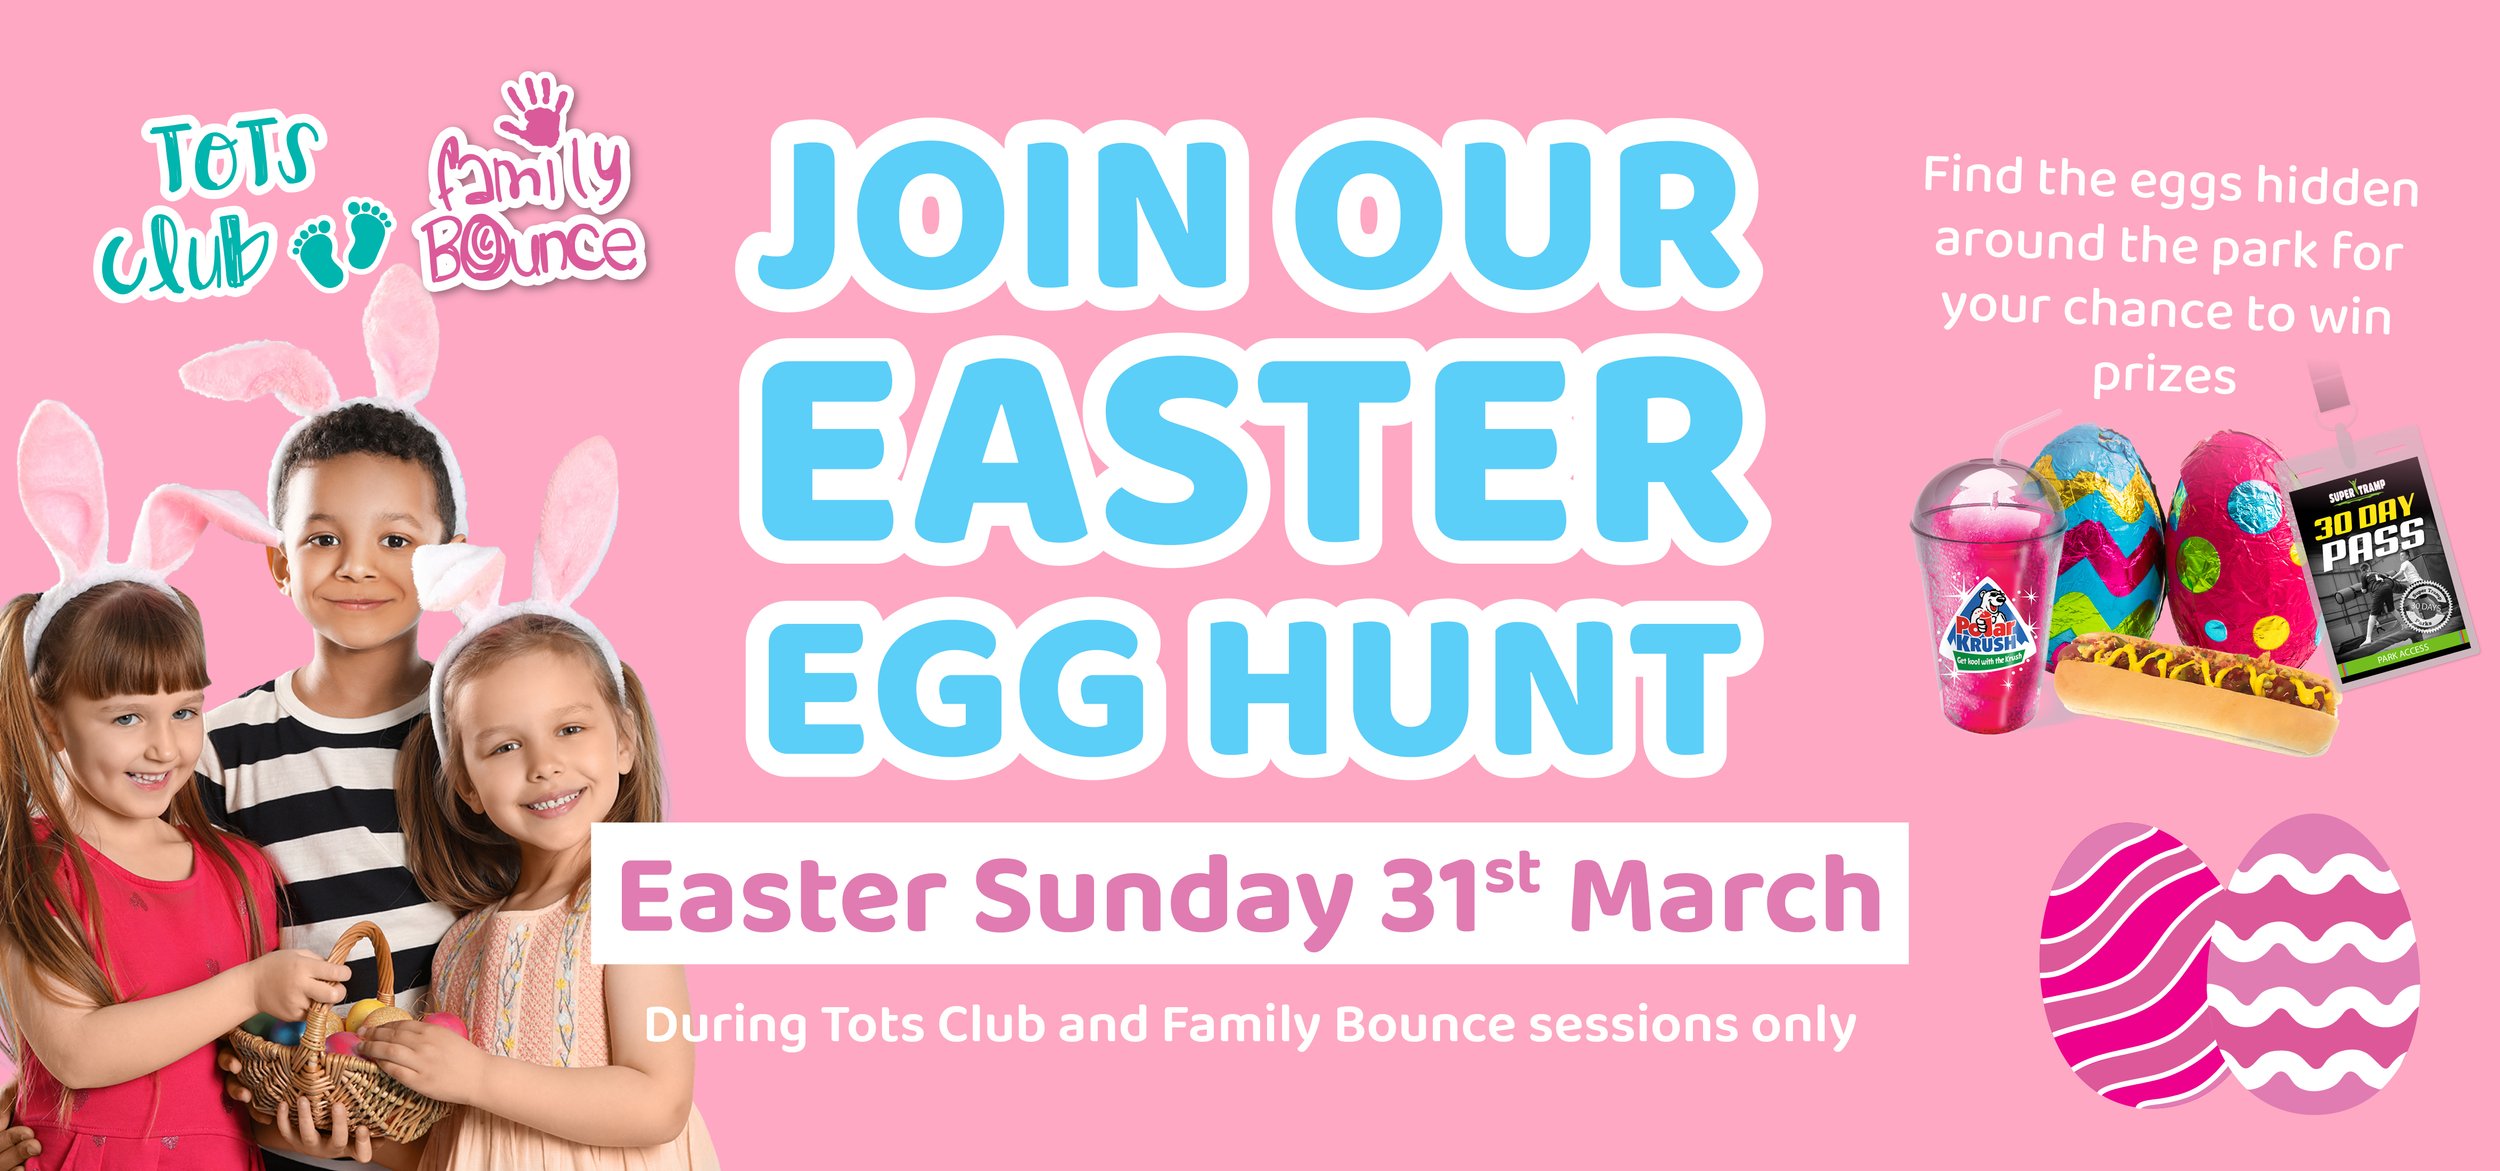 Easter Egg Hunt - Website Banners.jpg